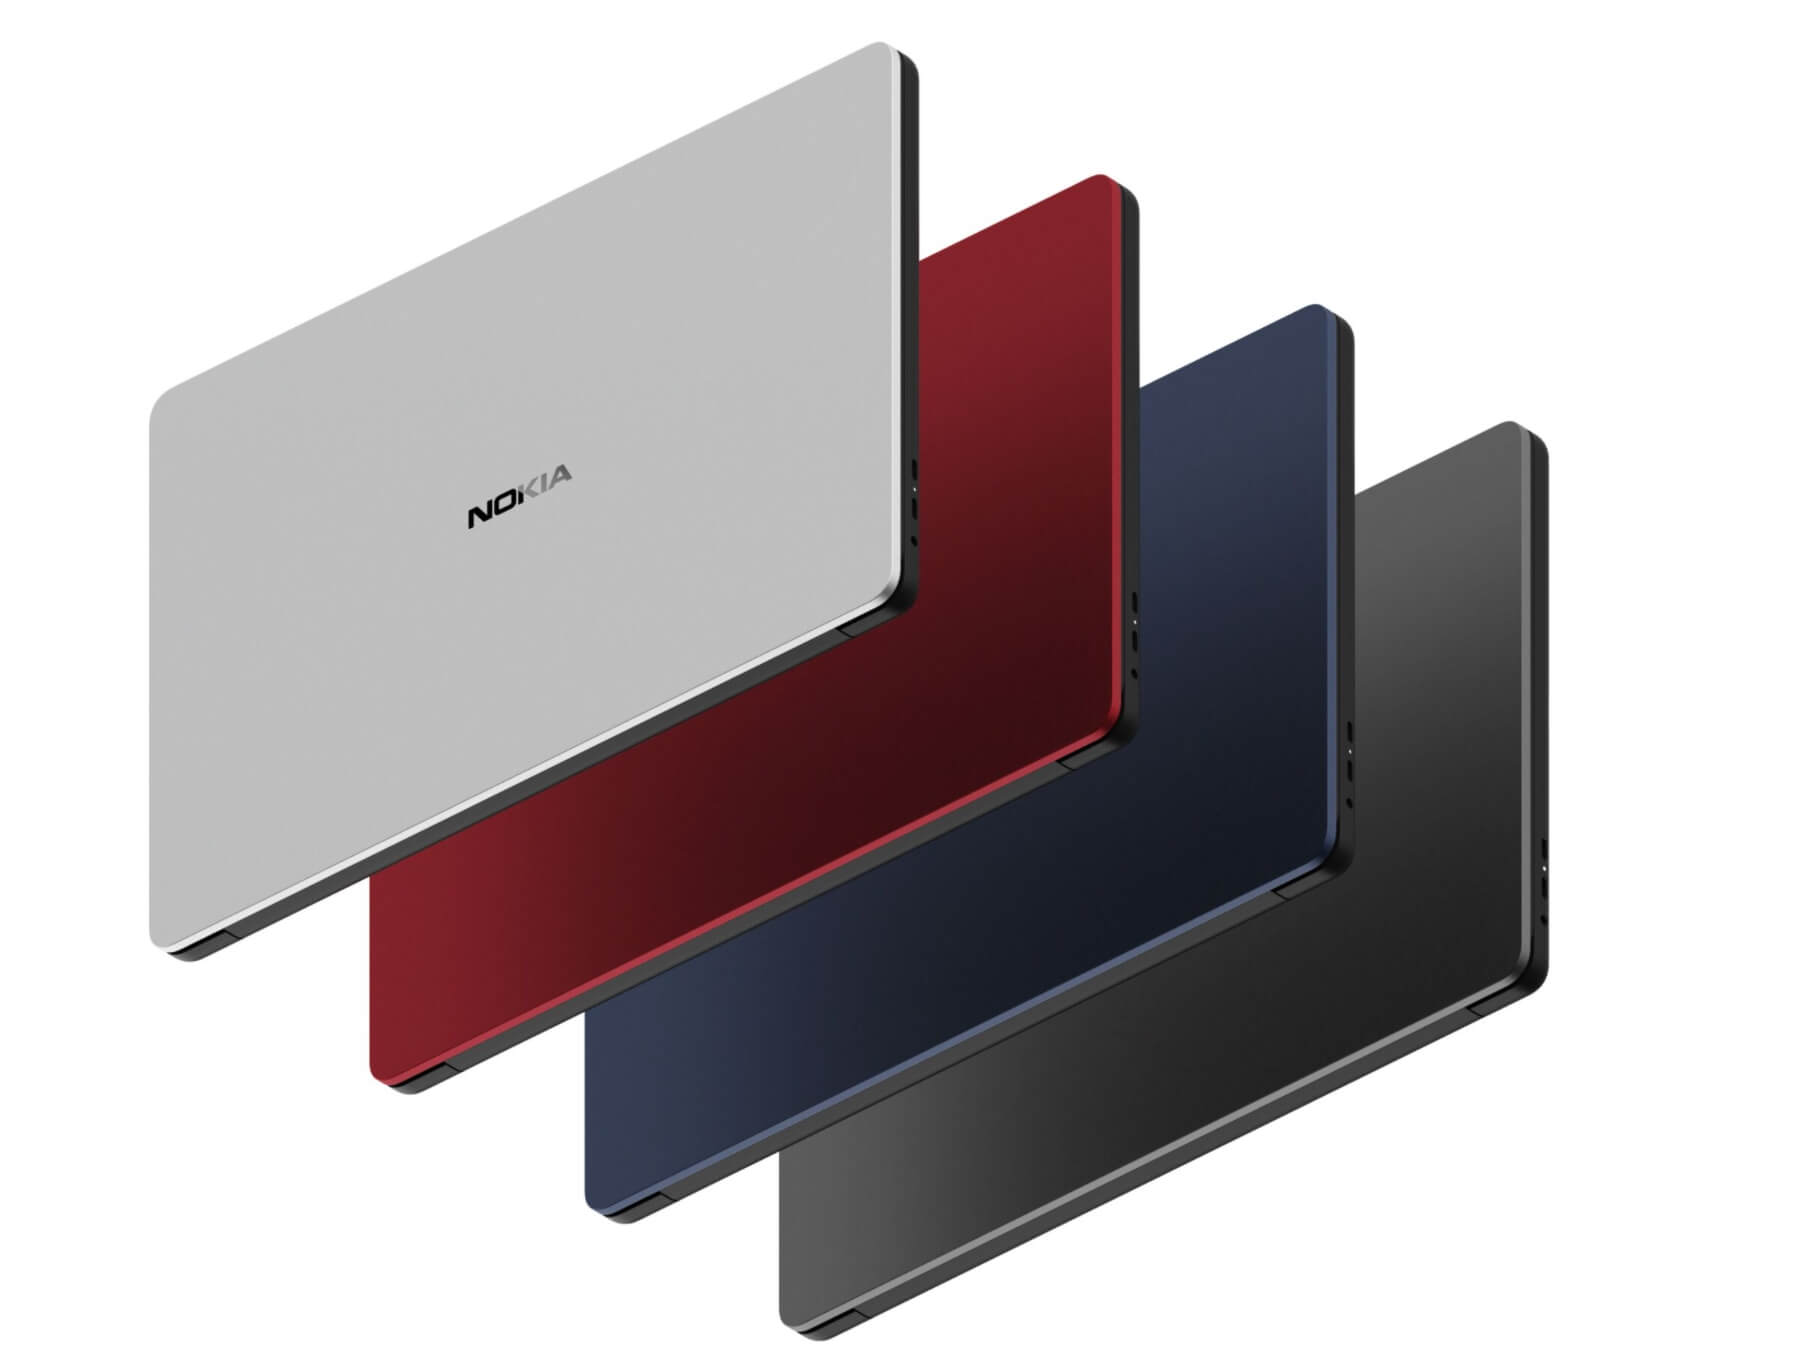 Nokia PureBook Pro erscheint in den Farben Silber, Rot, Blau und Schwarz.